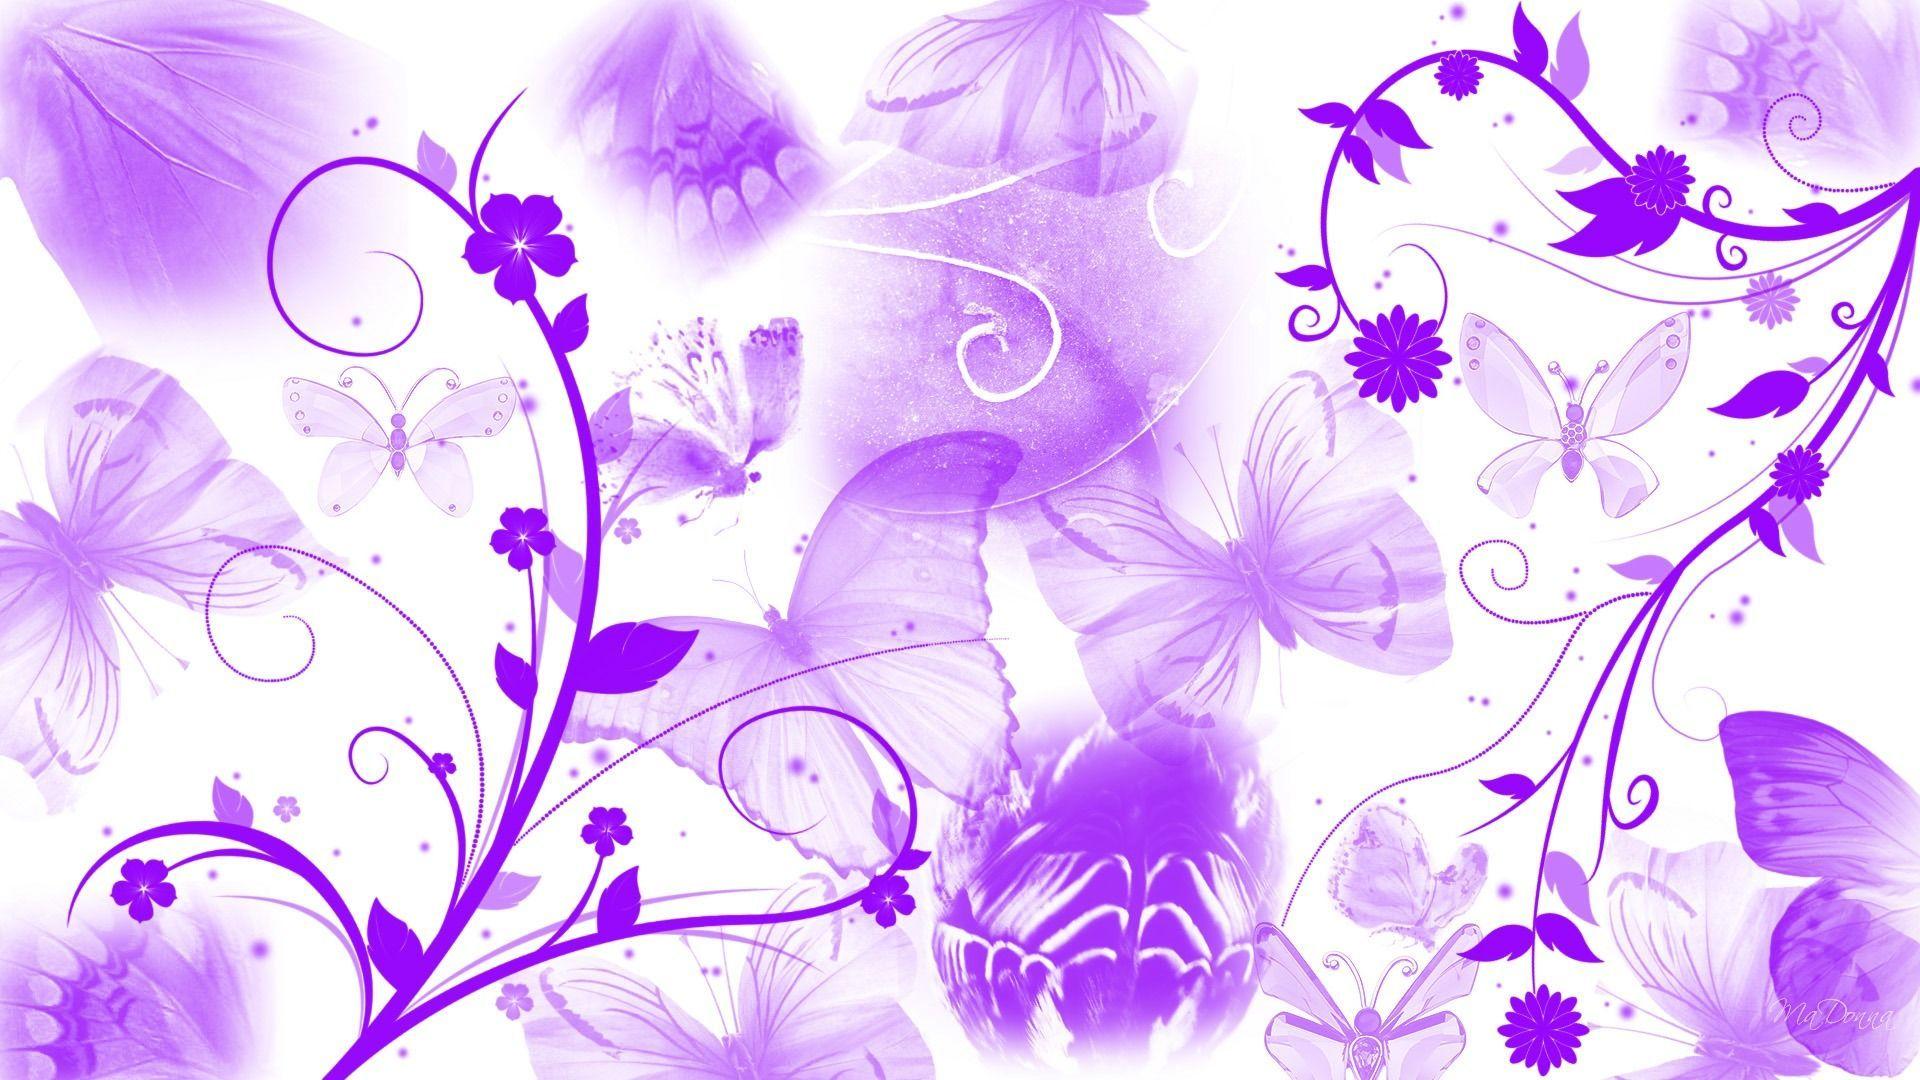 Purple Butterfly Abstract Wallpaper Wallike. PURPLE is